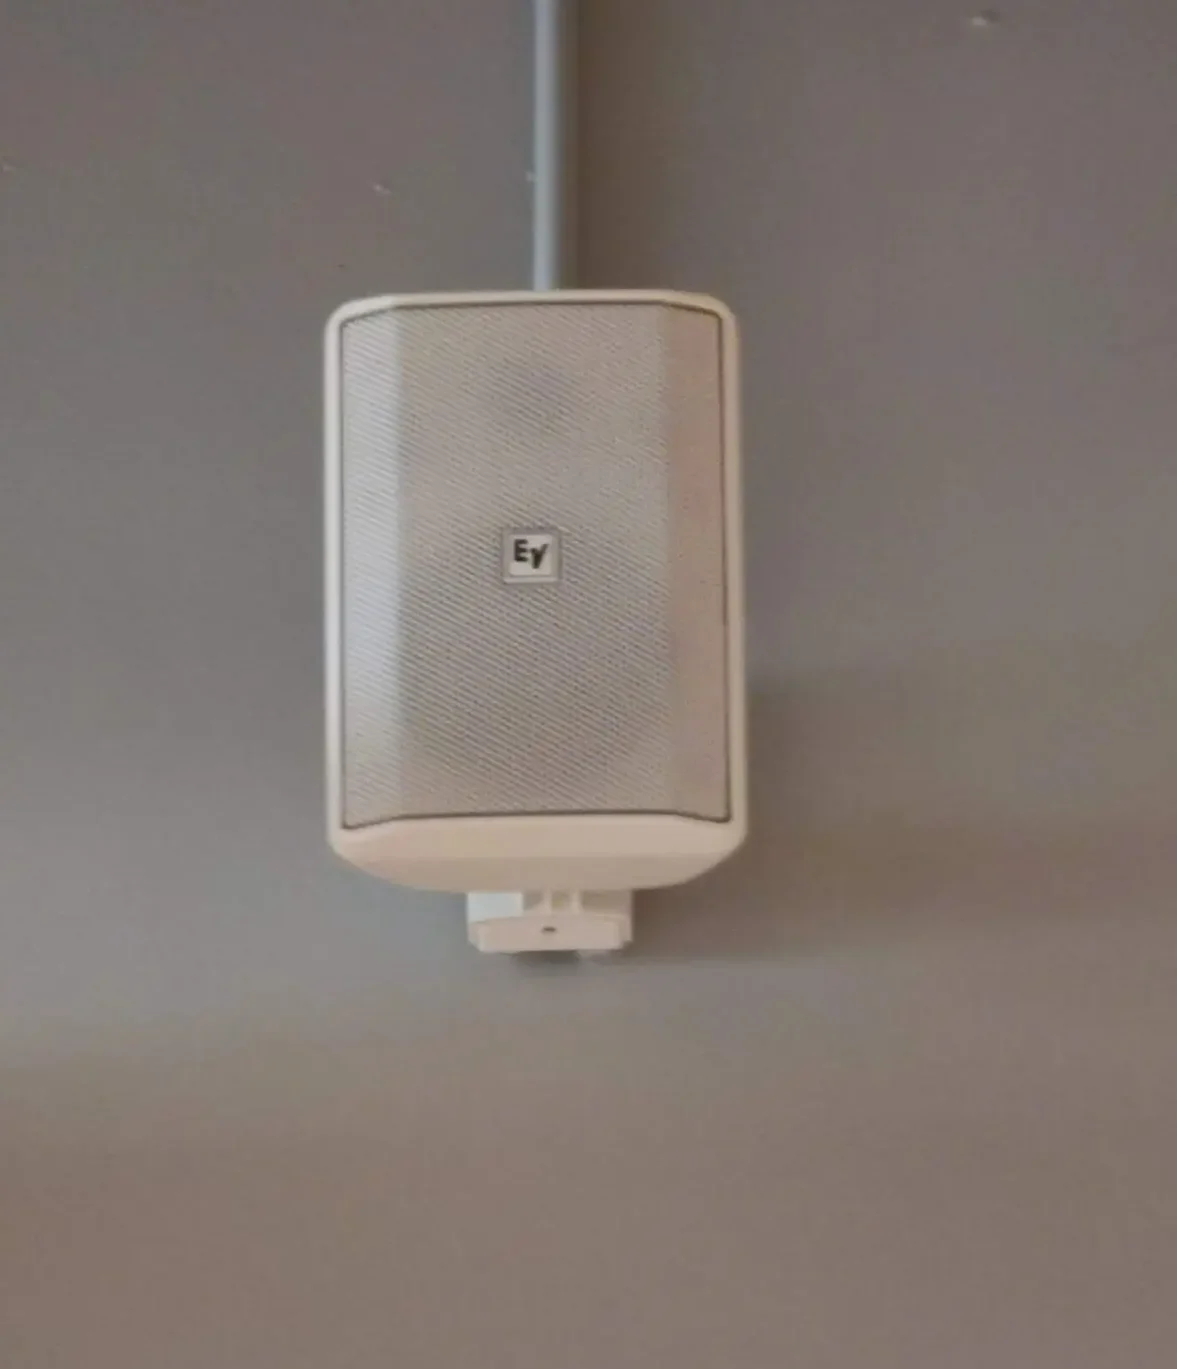 Hvid Voice højtaler monteret på en grå væg i en træningssal